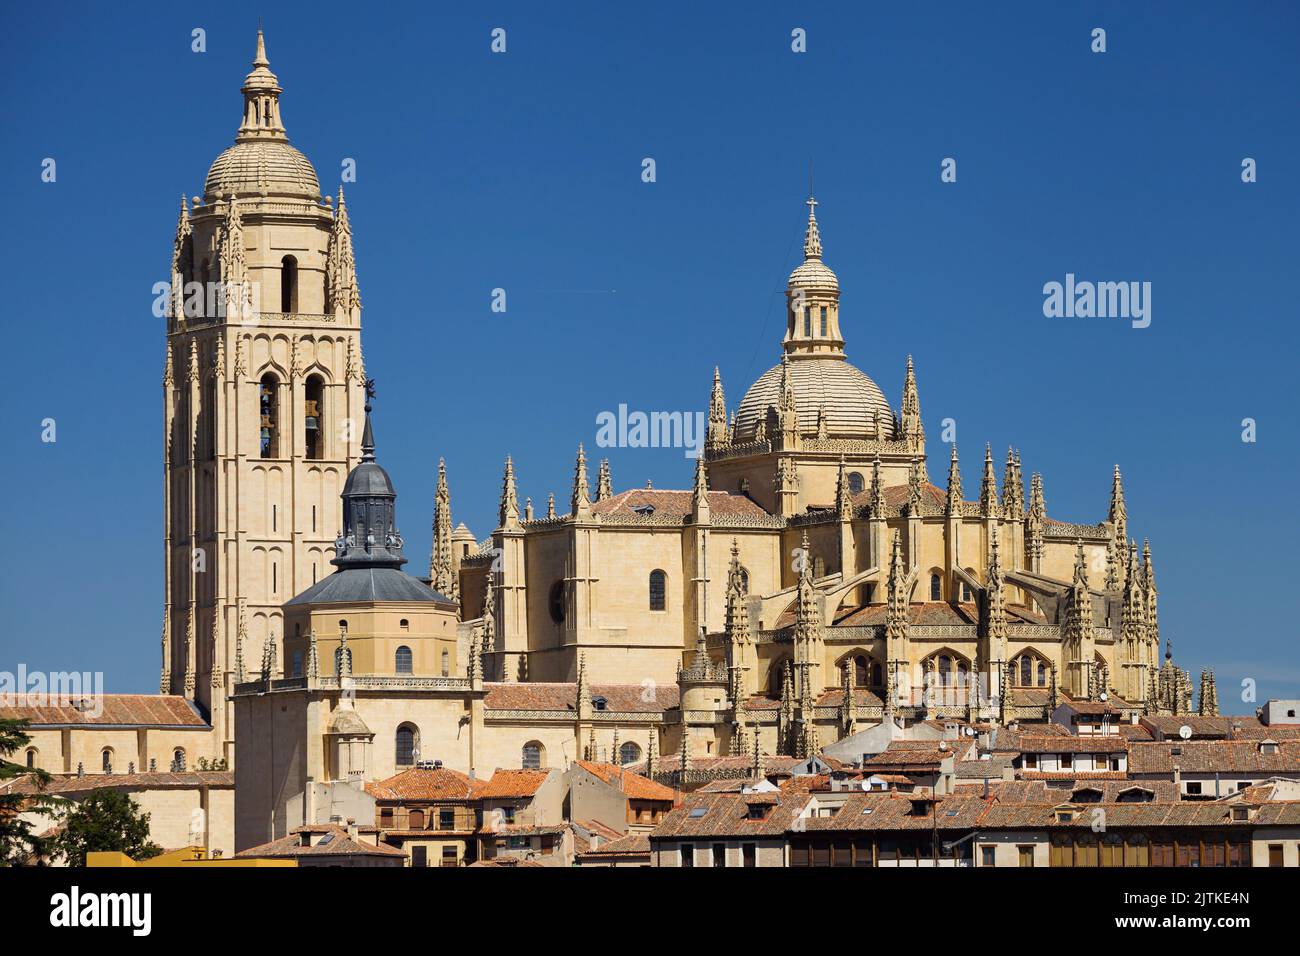 Cathedral of Segovia from Mirador de la Piedad, Segovia, Spain. Stock Photo